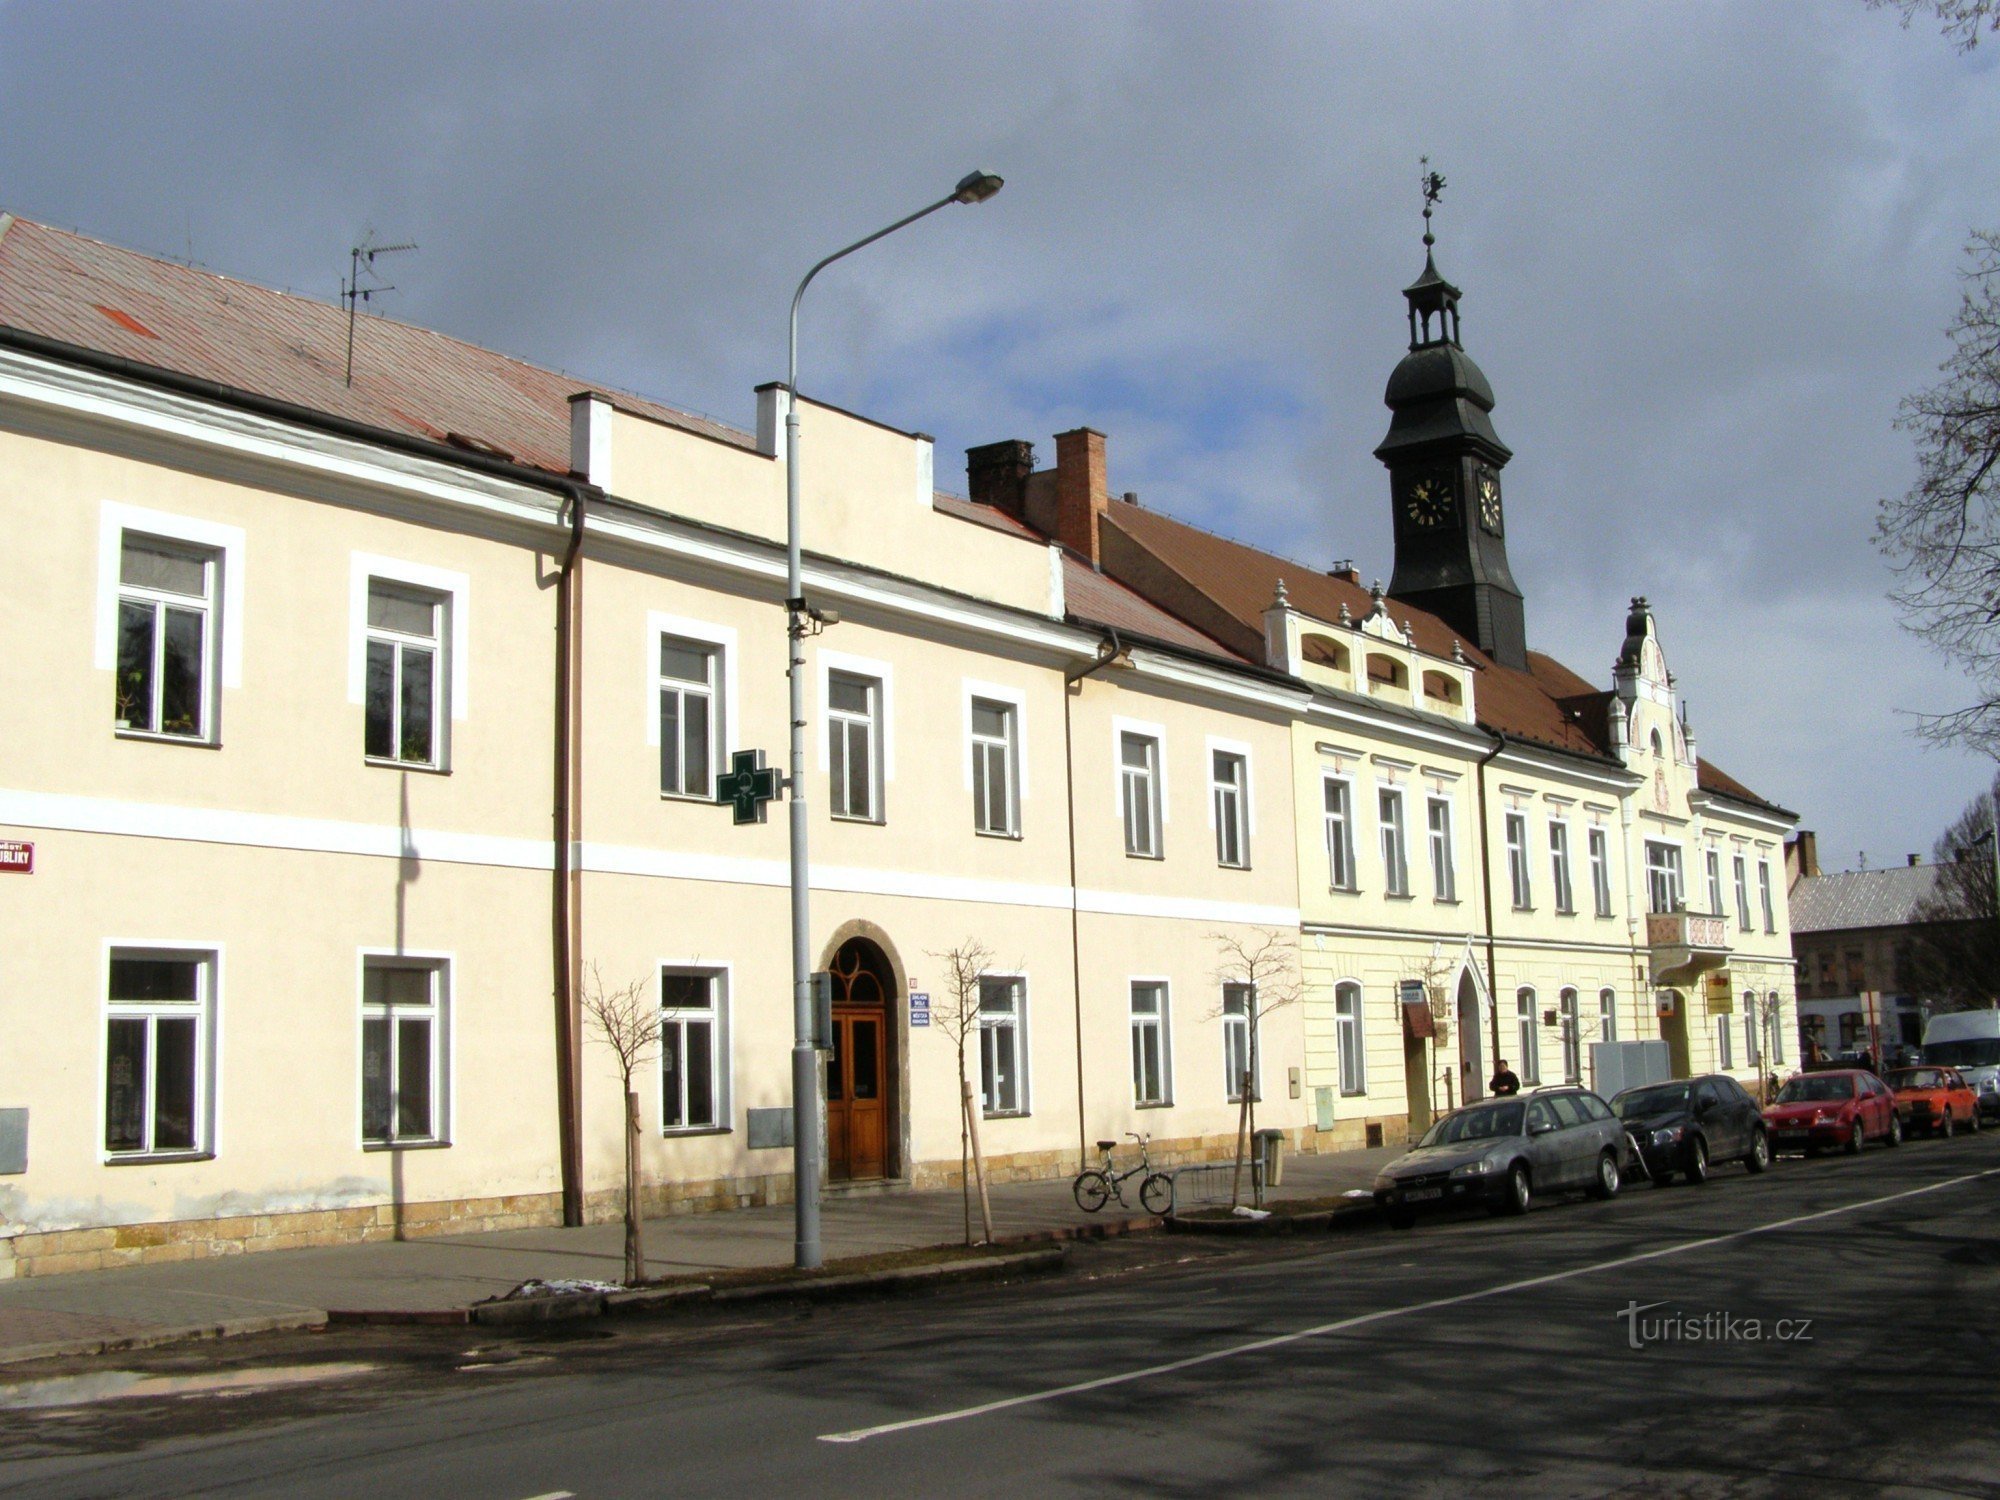 Πόλη Králové